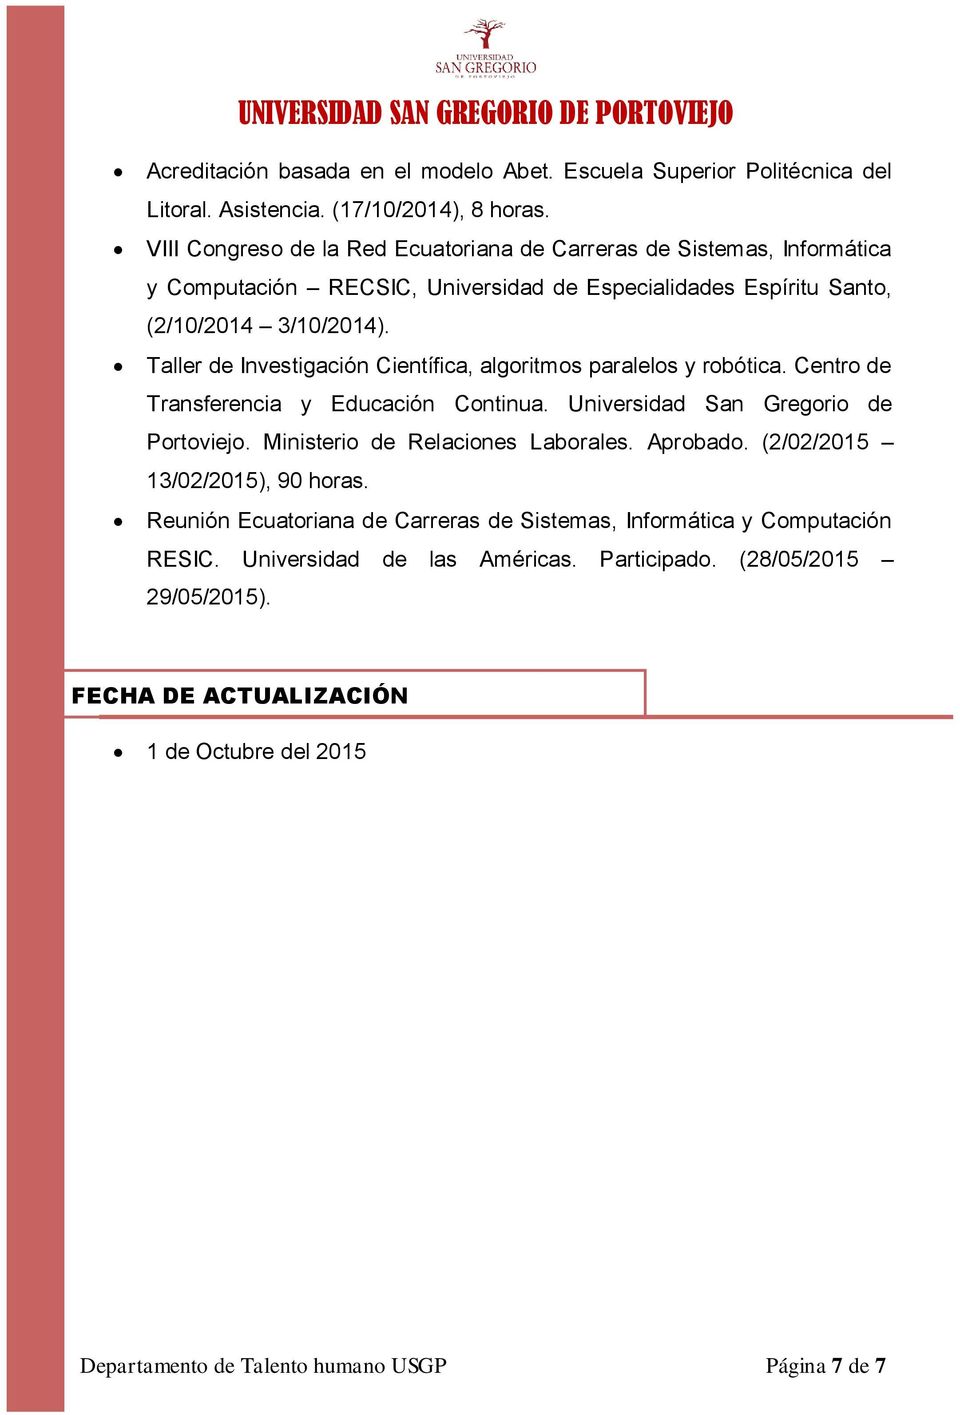 Taller de Investigación Científica, algoritmos paralelos y robótica. Centro de Transferencia y Educación Continua. Universidad San Gregorio de Portoviejo.